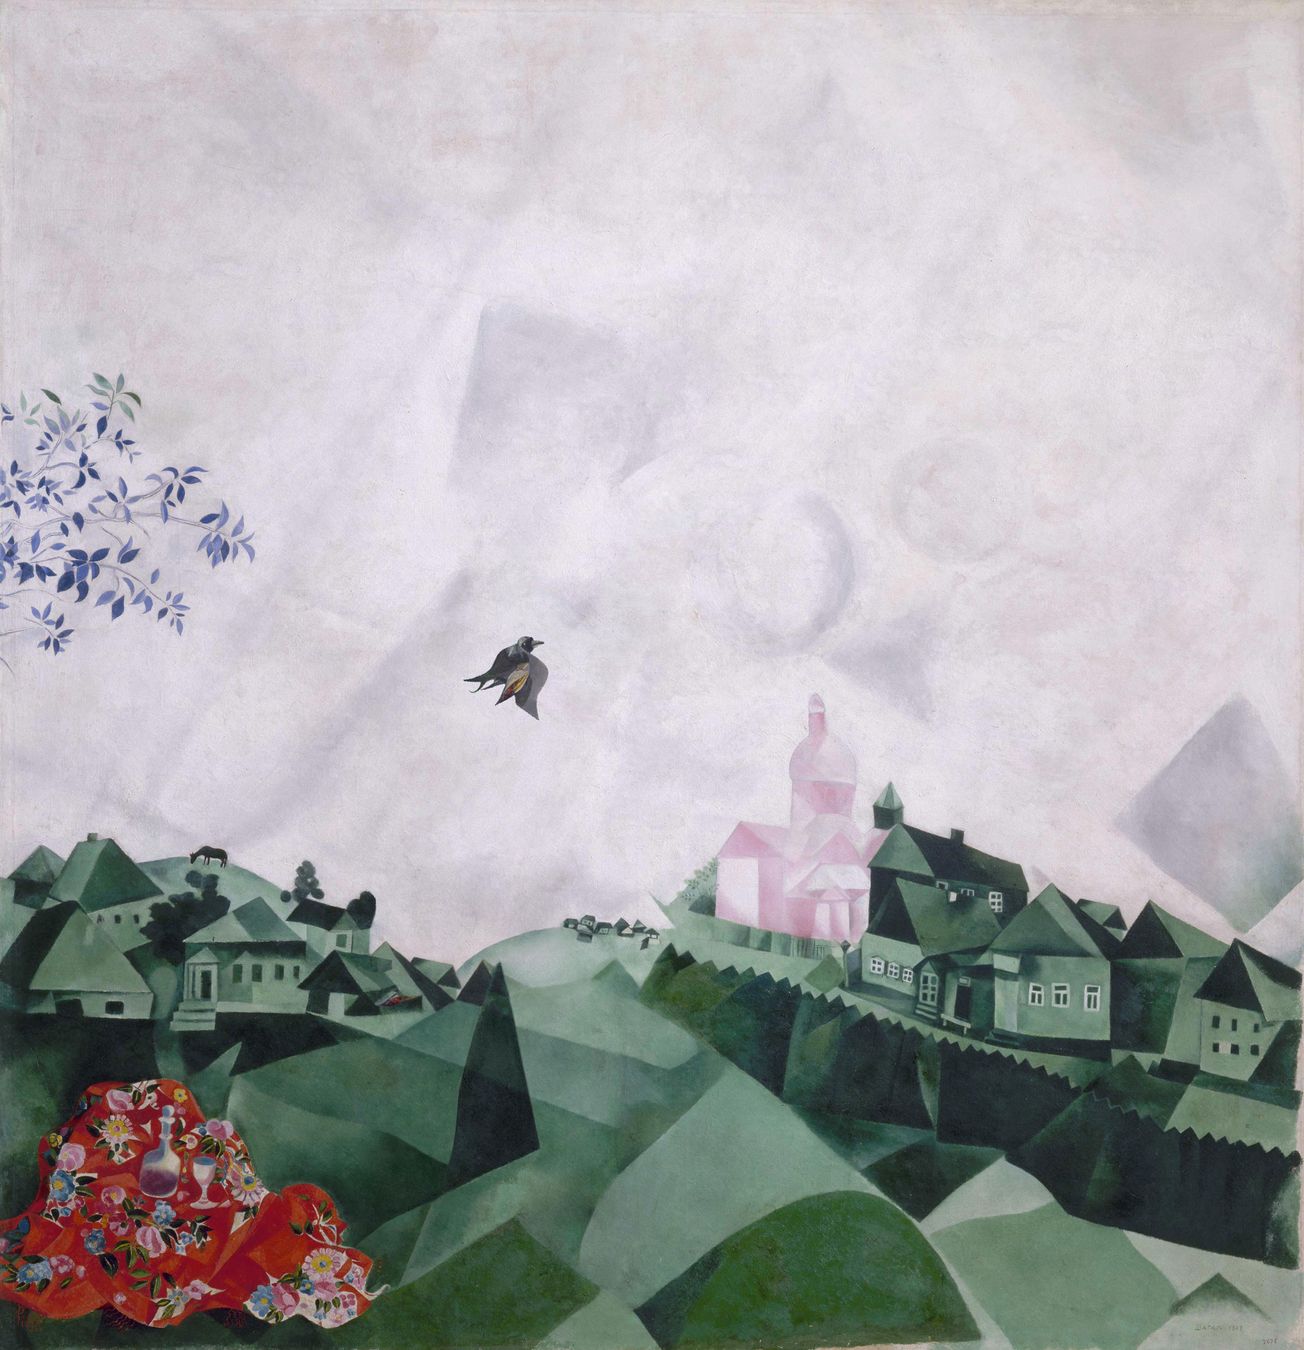 “The promenade ó El paseo” de Marc Chagall